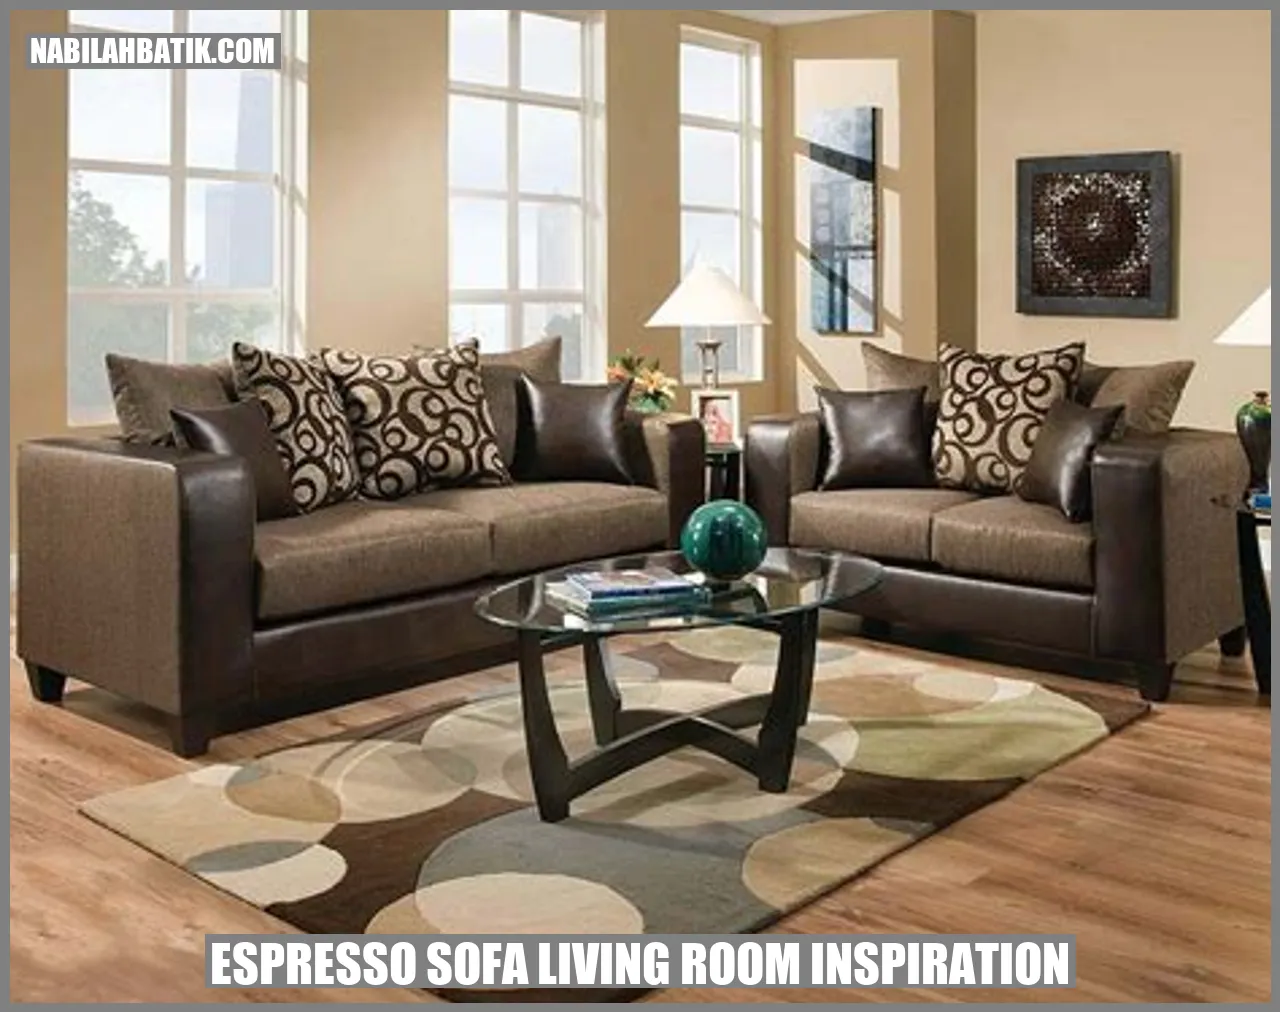 Espresso Sofa Living Room Inspiration